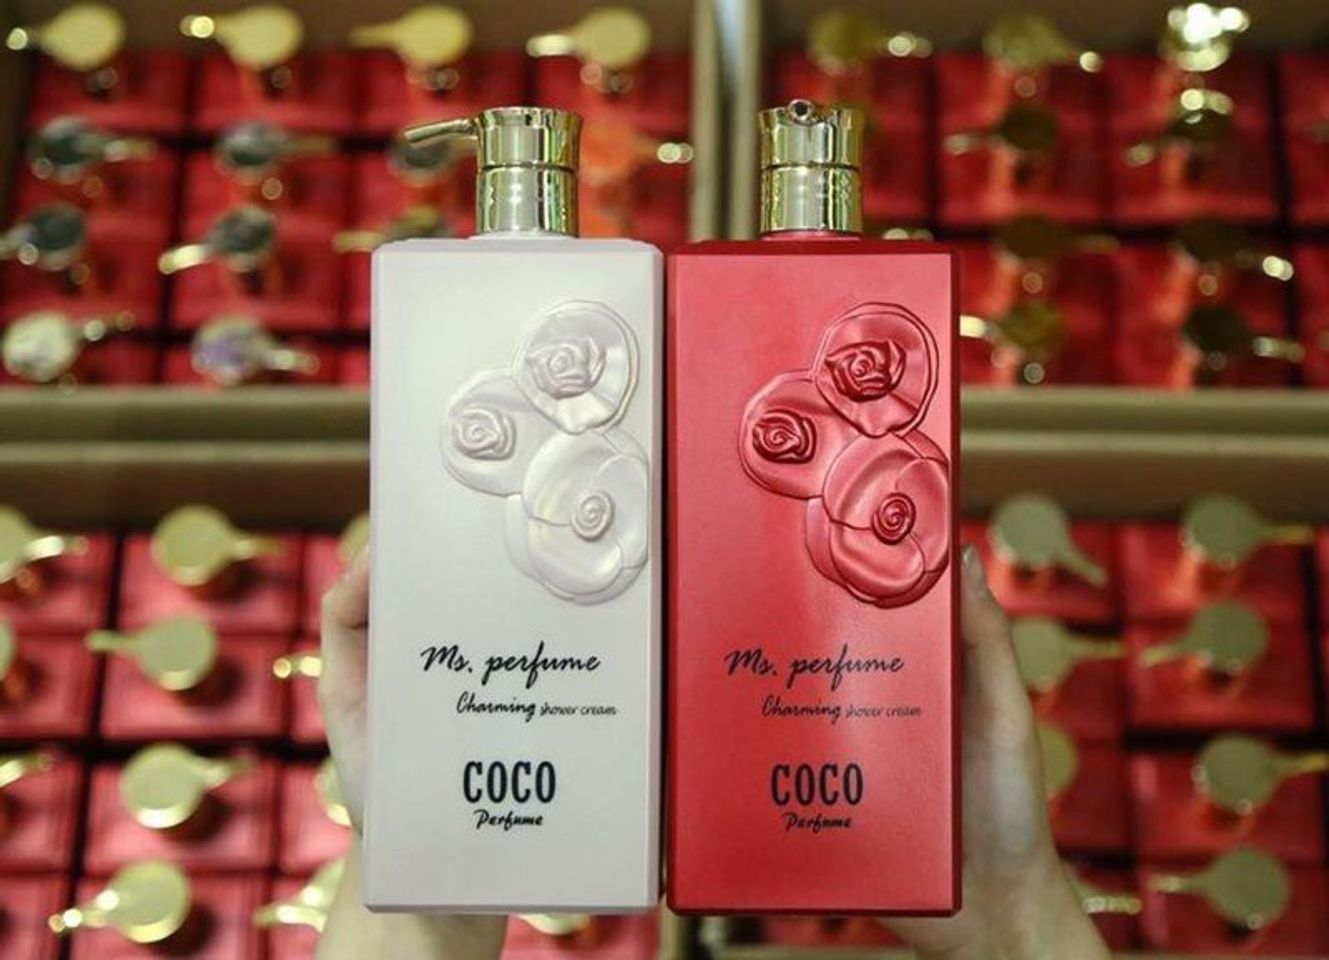 Sữa tắm Coco đem lại sự mịn màng cho làn da tươi trẻ, hương thơm chiết xuất từ hoa hồng thơm ngát, dịu nhẹ